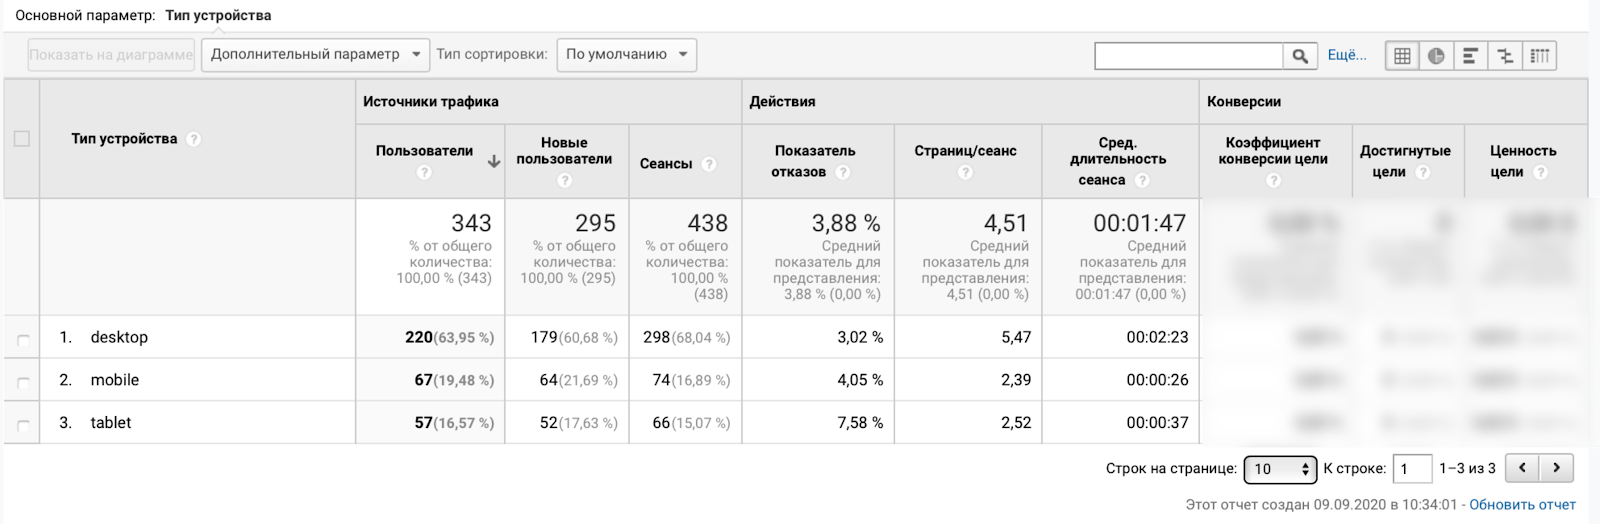 Отчет c устройствами в Google Analytics